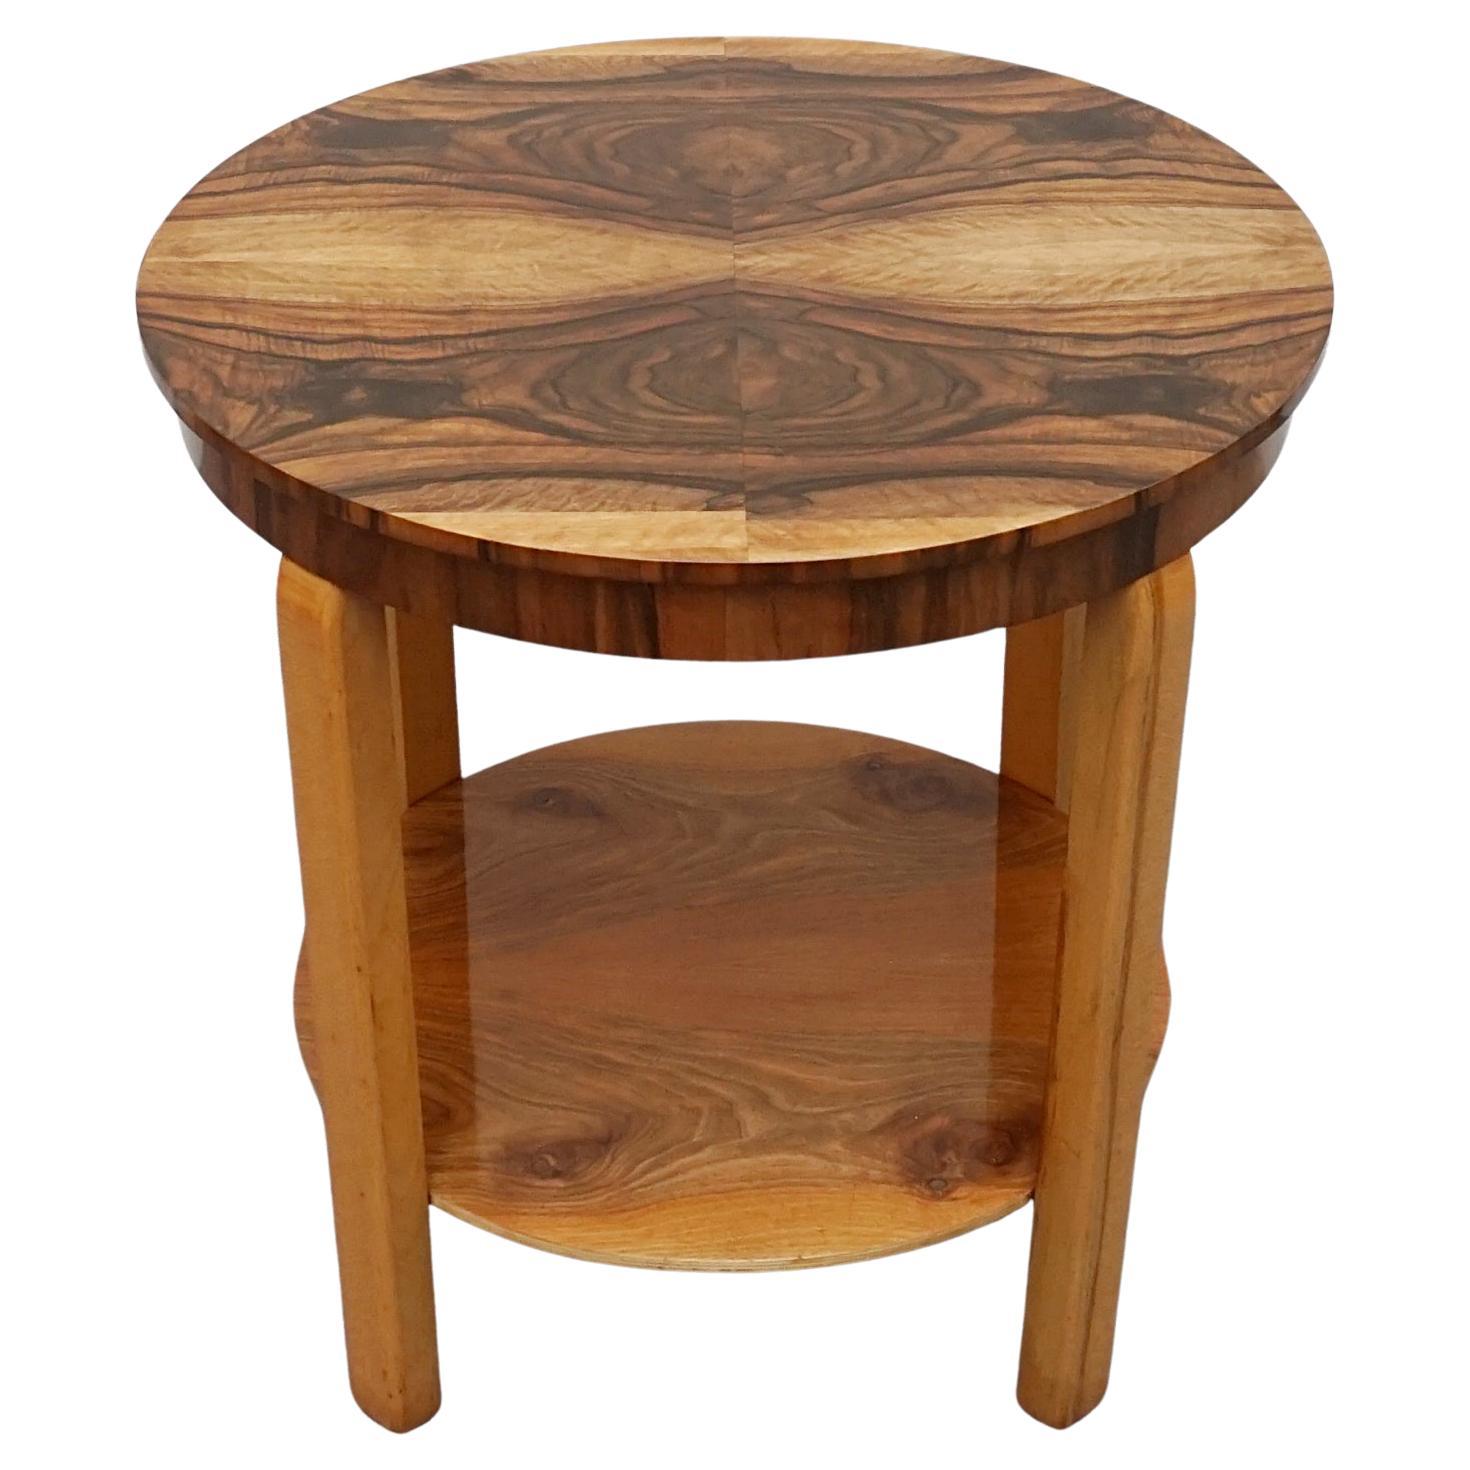 An Art Deco Walnut Side Table